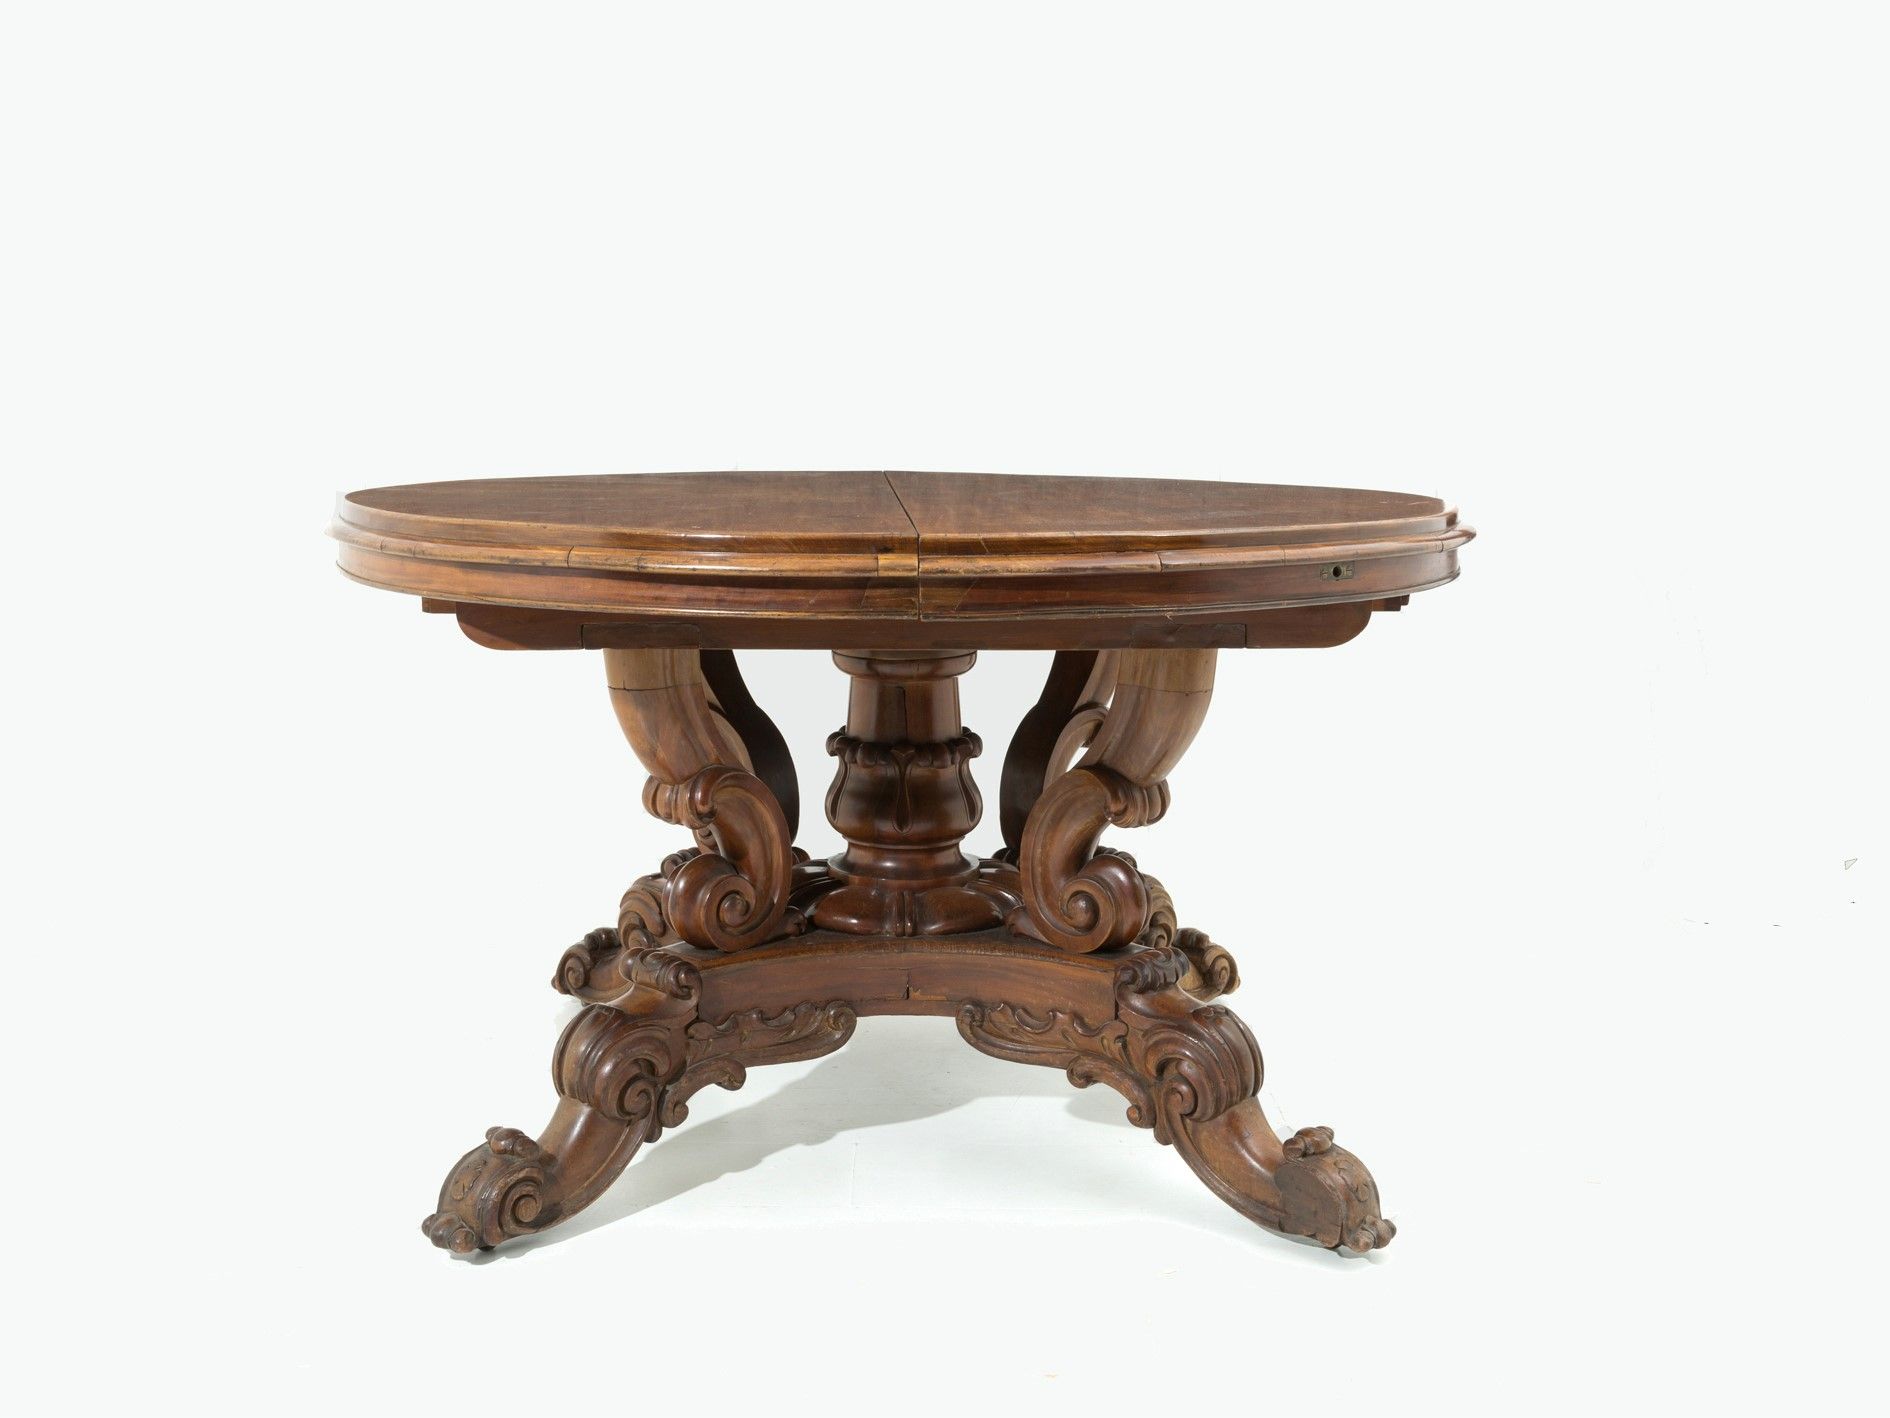 Extendable basket table 红木篮子圆桌，顶部可延伸。19世纪。包括两个延长线（每个长度约31厘米）。高79厘米左右。